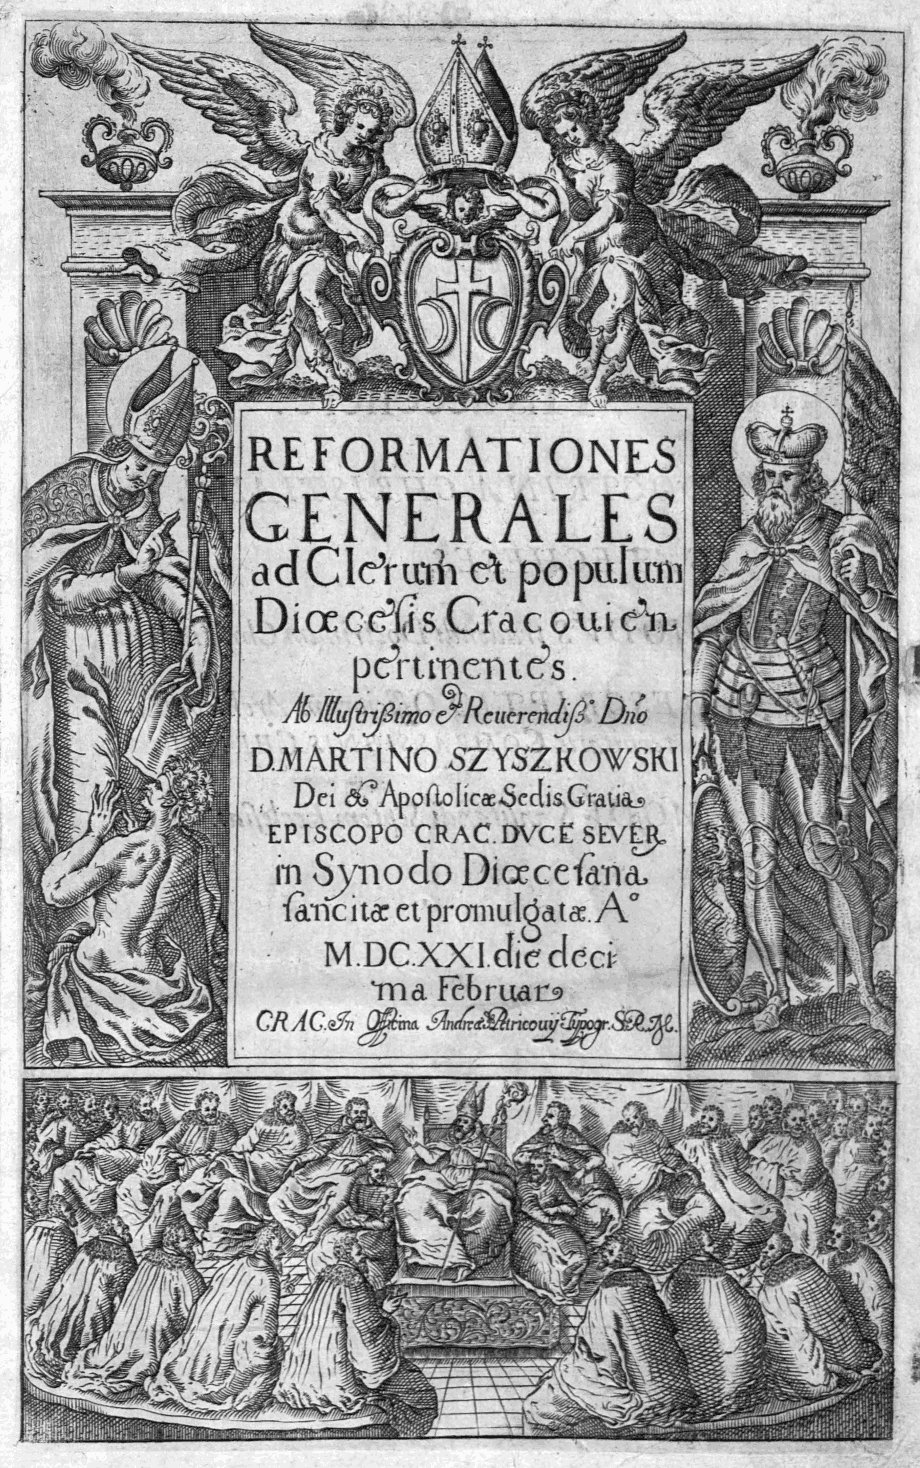 Reformationes Generales ad Clerum et populum Dioecesis Cracoviensis